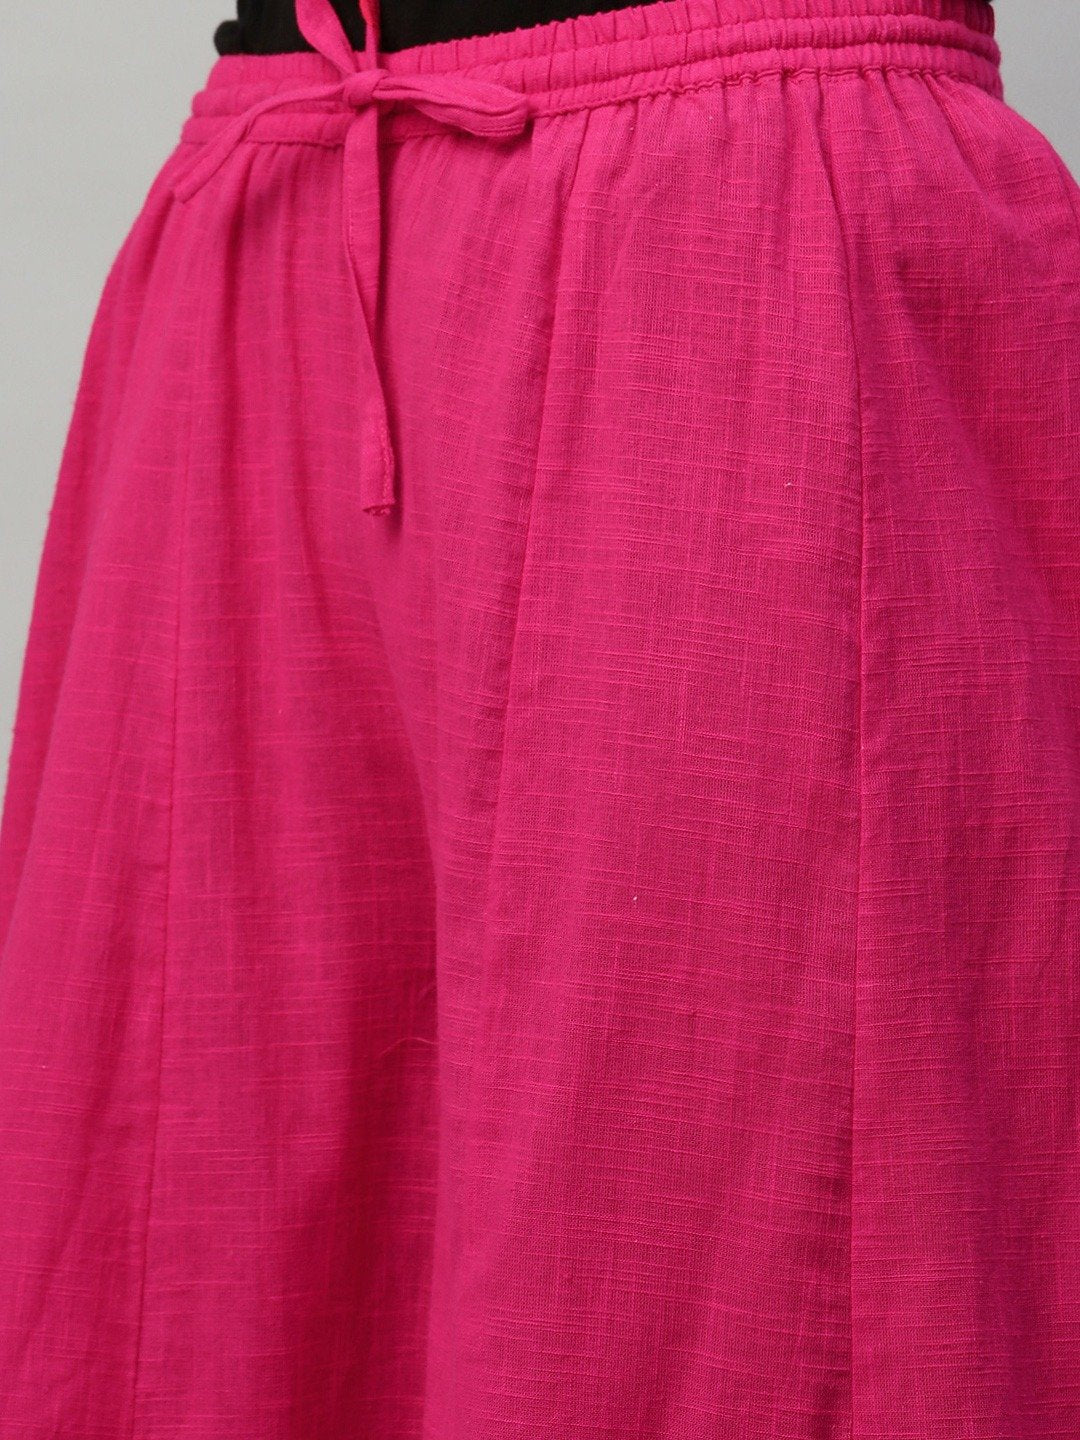 Ishin Women's Cotton Pink Bandhani Printed A-Line Kurta Palazzo Set